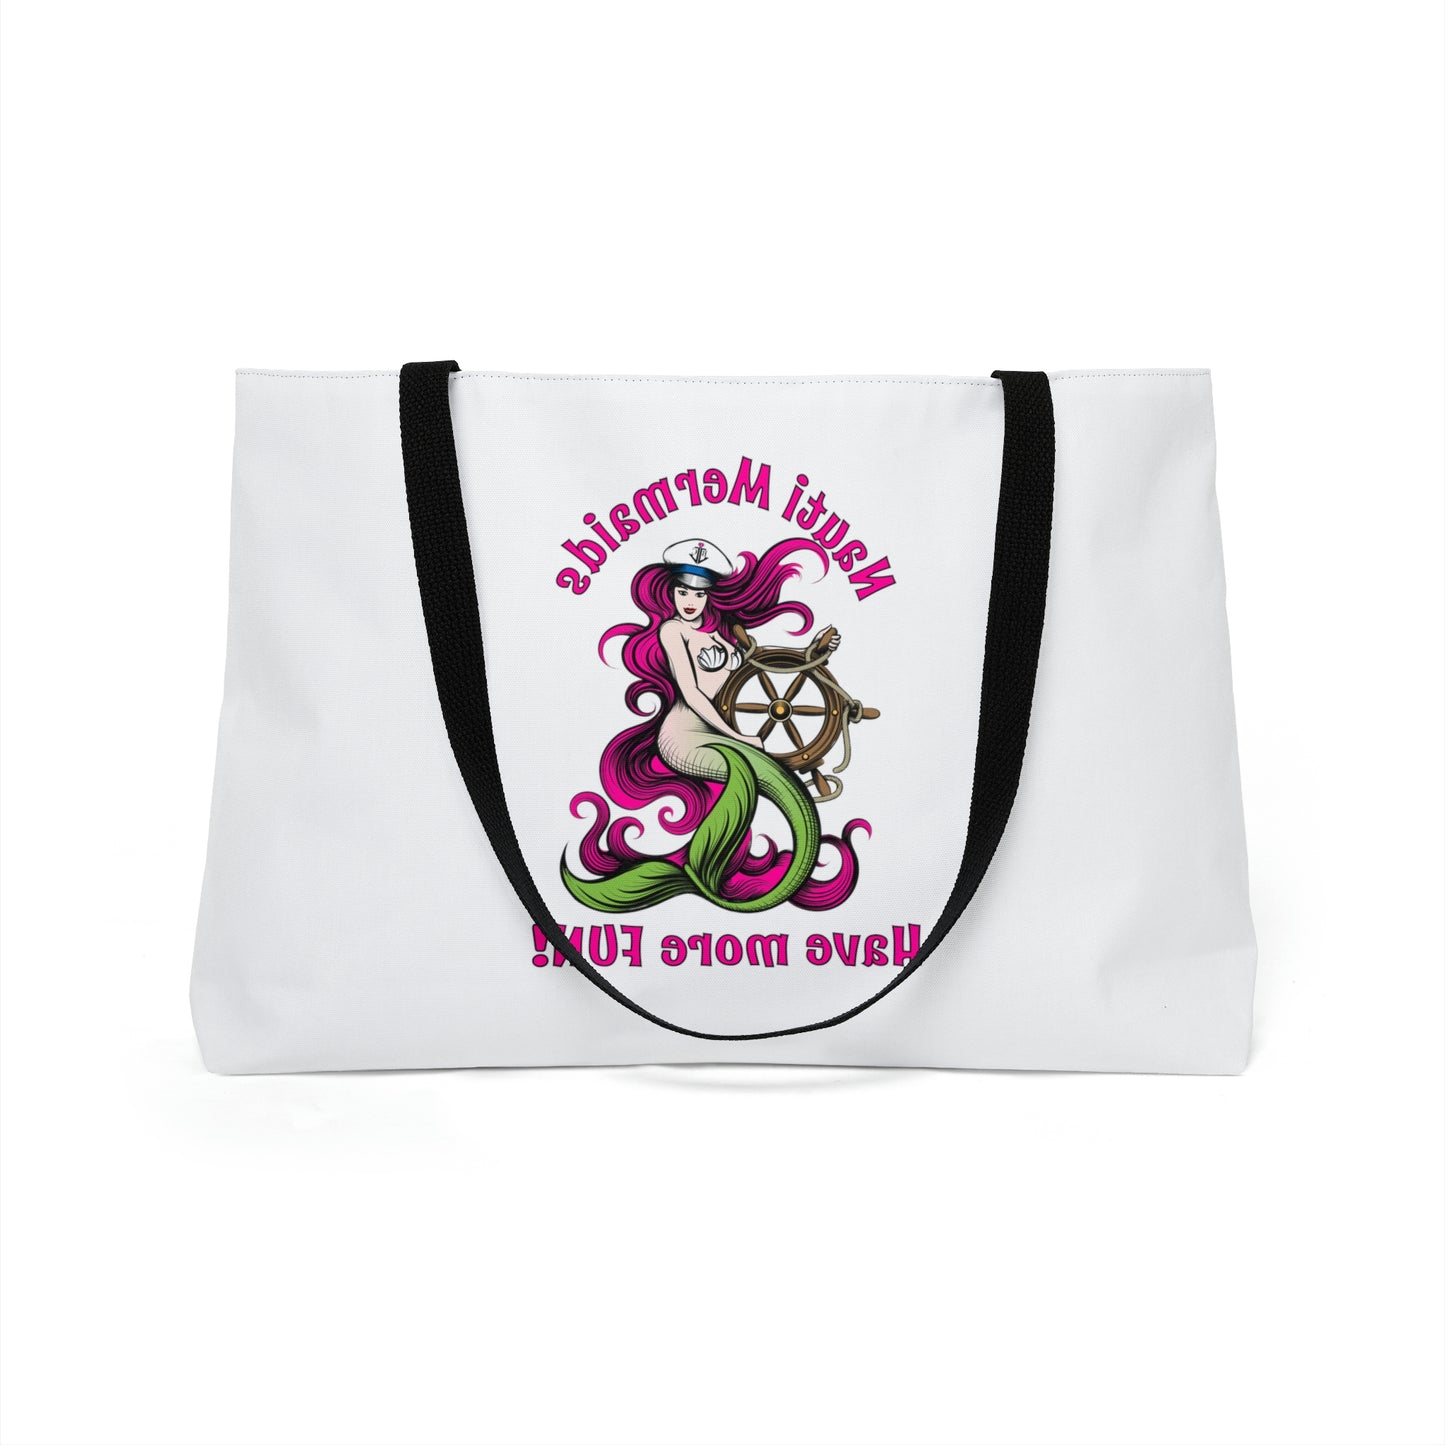 Naughti Mermaids Have More Fun Pink-Weekender Tote Bag